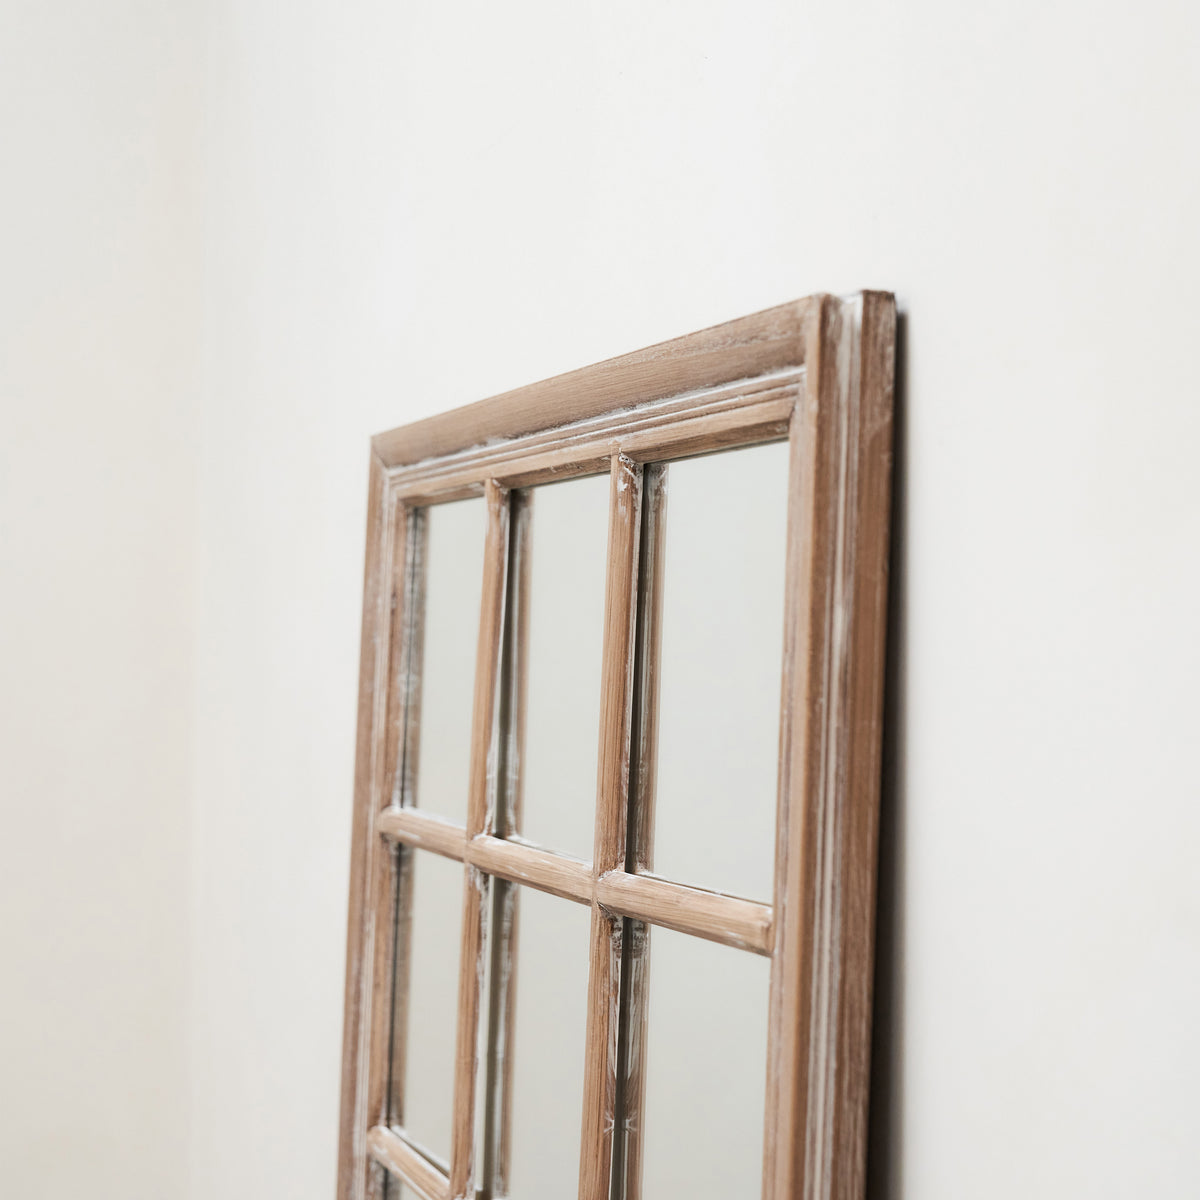 Sasha - Miroir de fenêtre rectangulaire Shabby Chic en chêne 100 cm x 75 cm